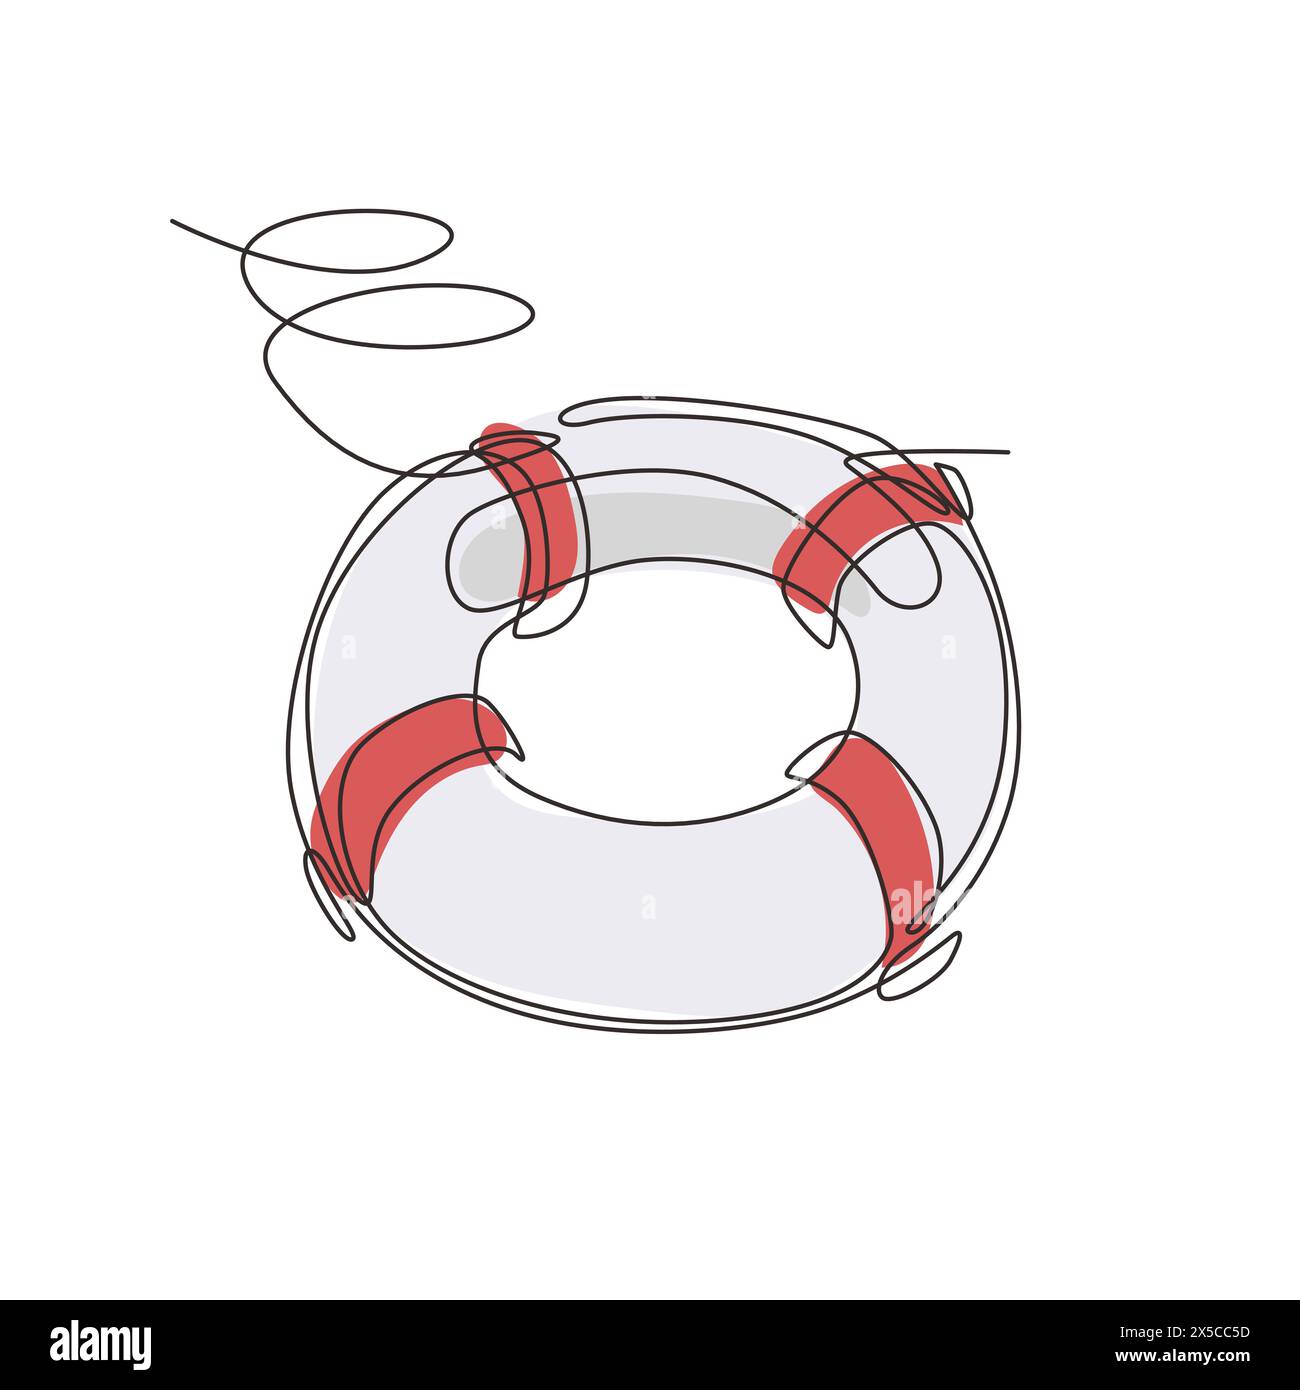 Ligne continue unique dessinant bouées de sauvetage, ceintures de sauvetage, anneau en caoutchouc gonflable avec corde pour l'aide et la sécurité de la noyade de vie. Anneau de sauvetage pour h rapide Illustration de Vecteur